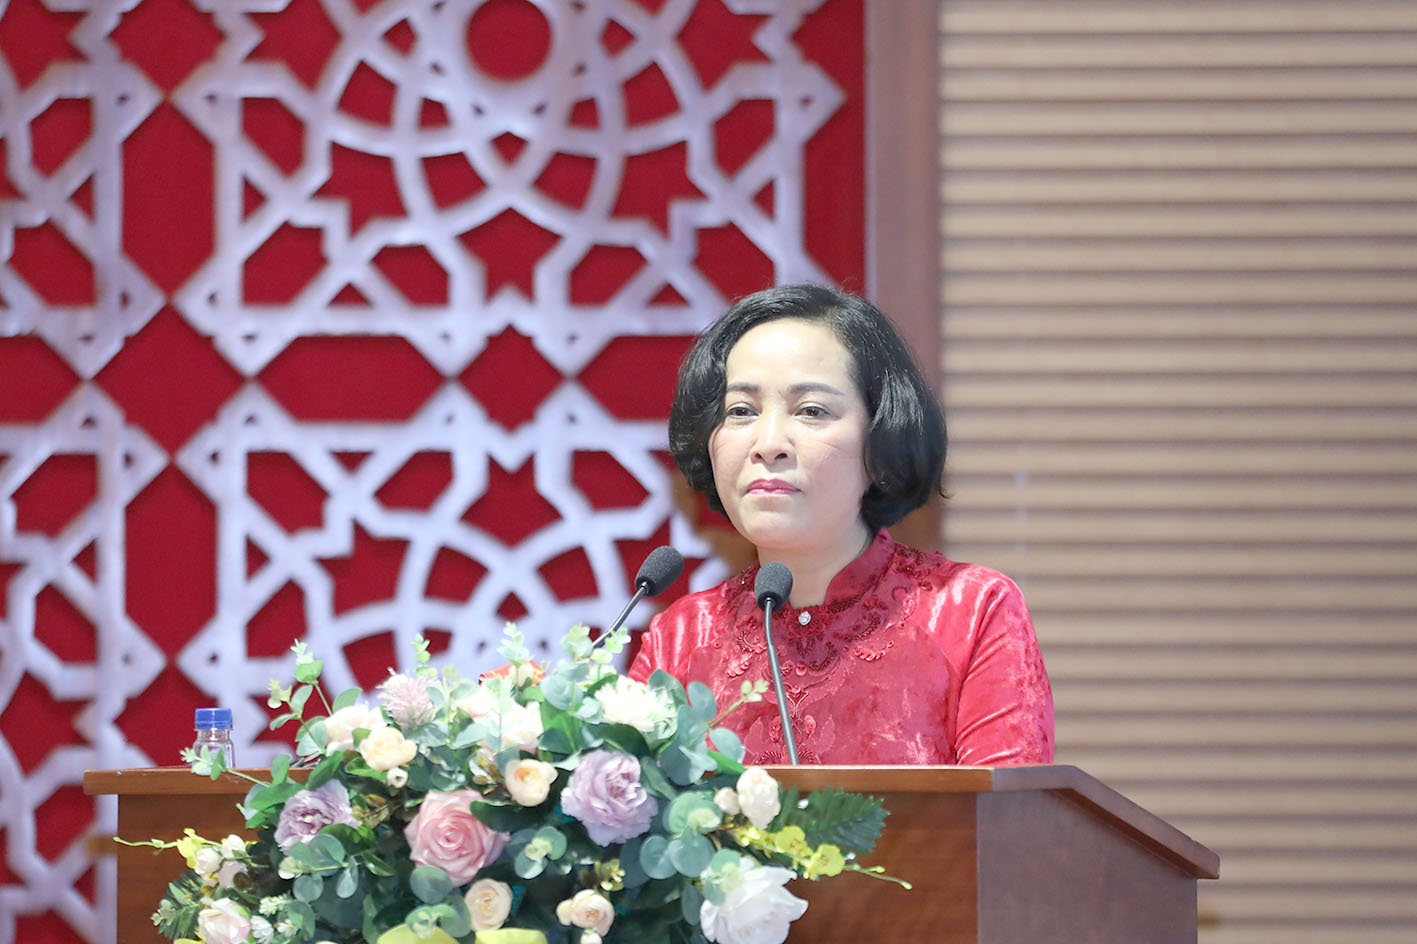 	Trưởng Ban Công tác đại biểu Nguyễn Thị Thanh thay mặt cho các cá nhân, tập thể được nhận bằng khen phát biểu tại buổi lễ